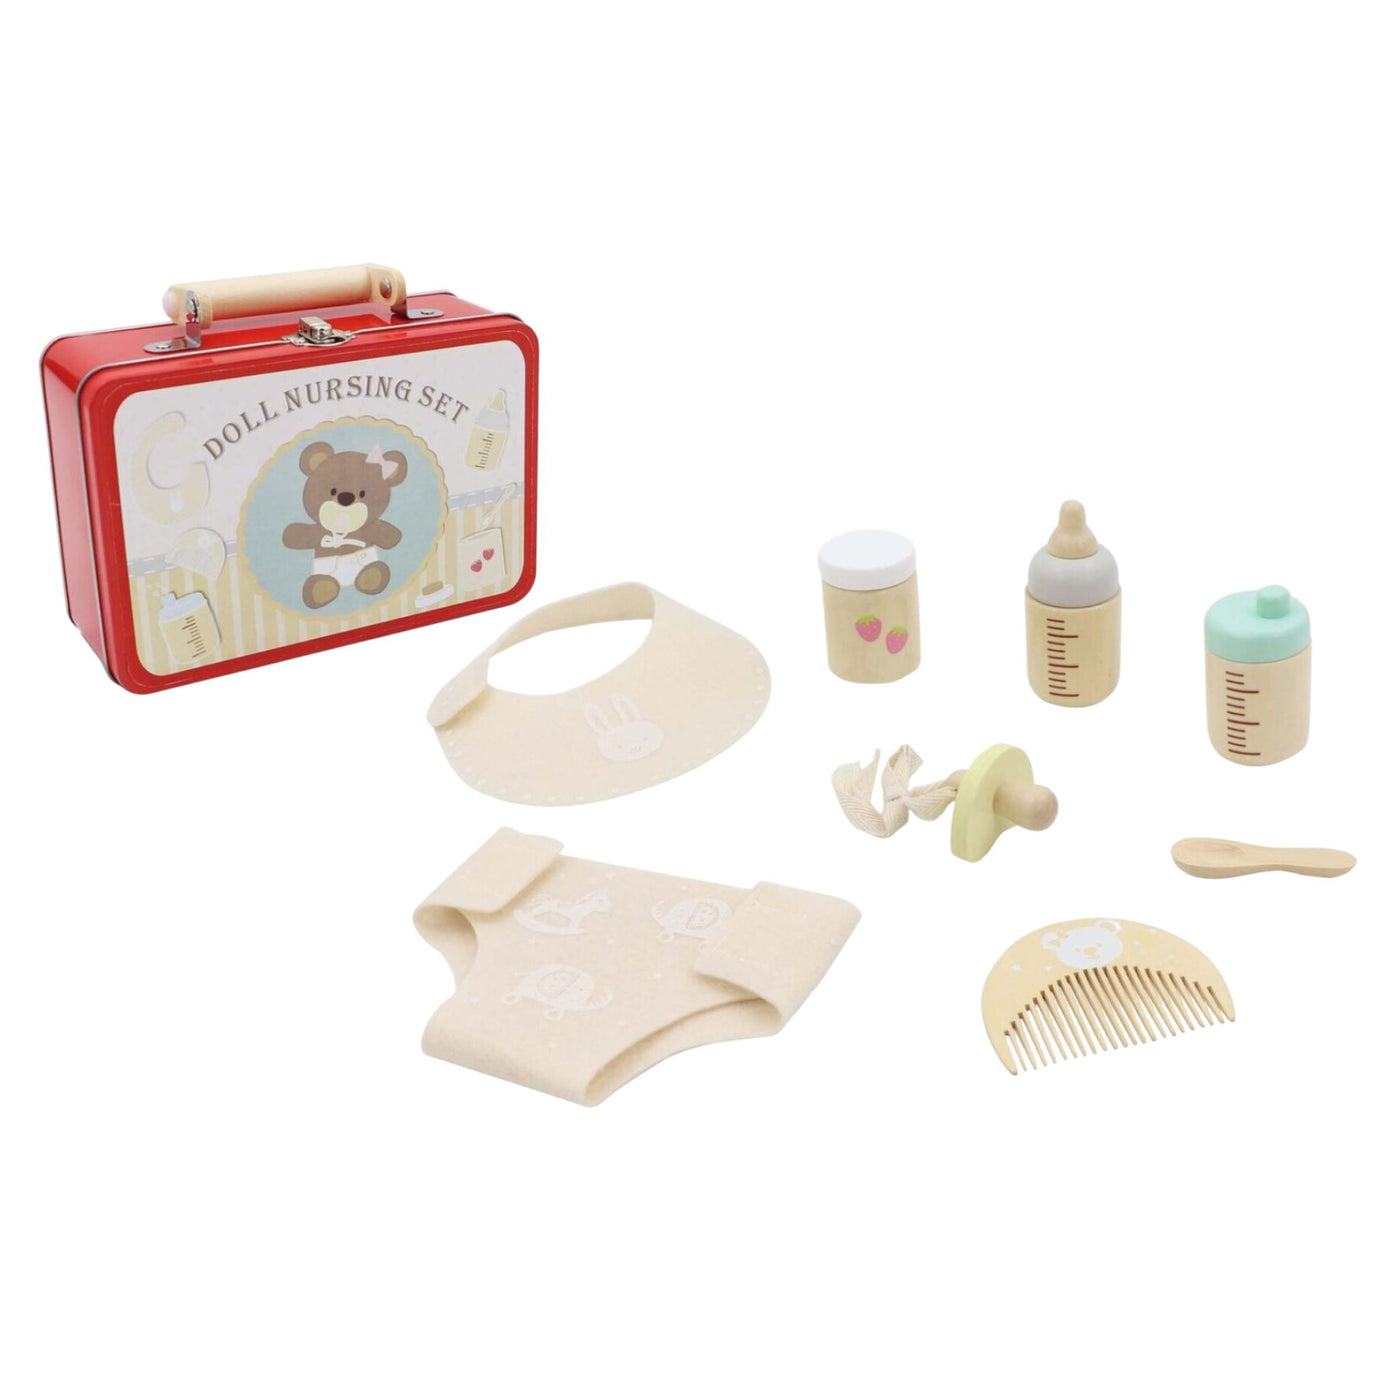 Doll Nursing Play Set in Tin Case